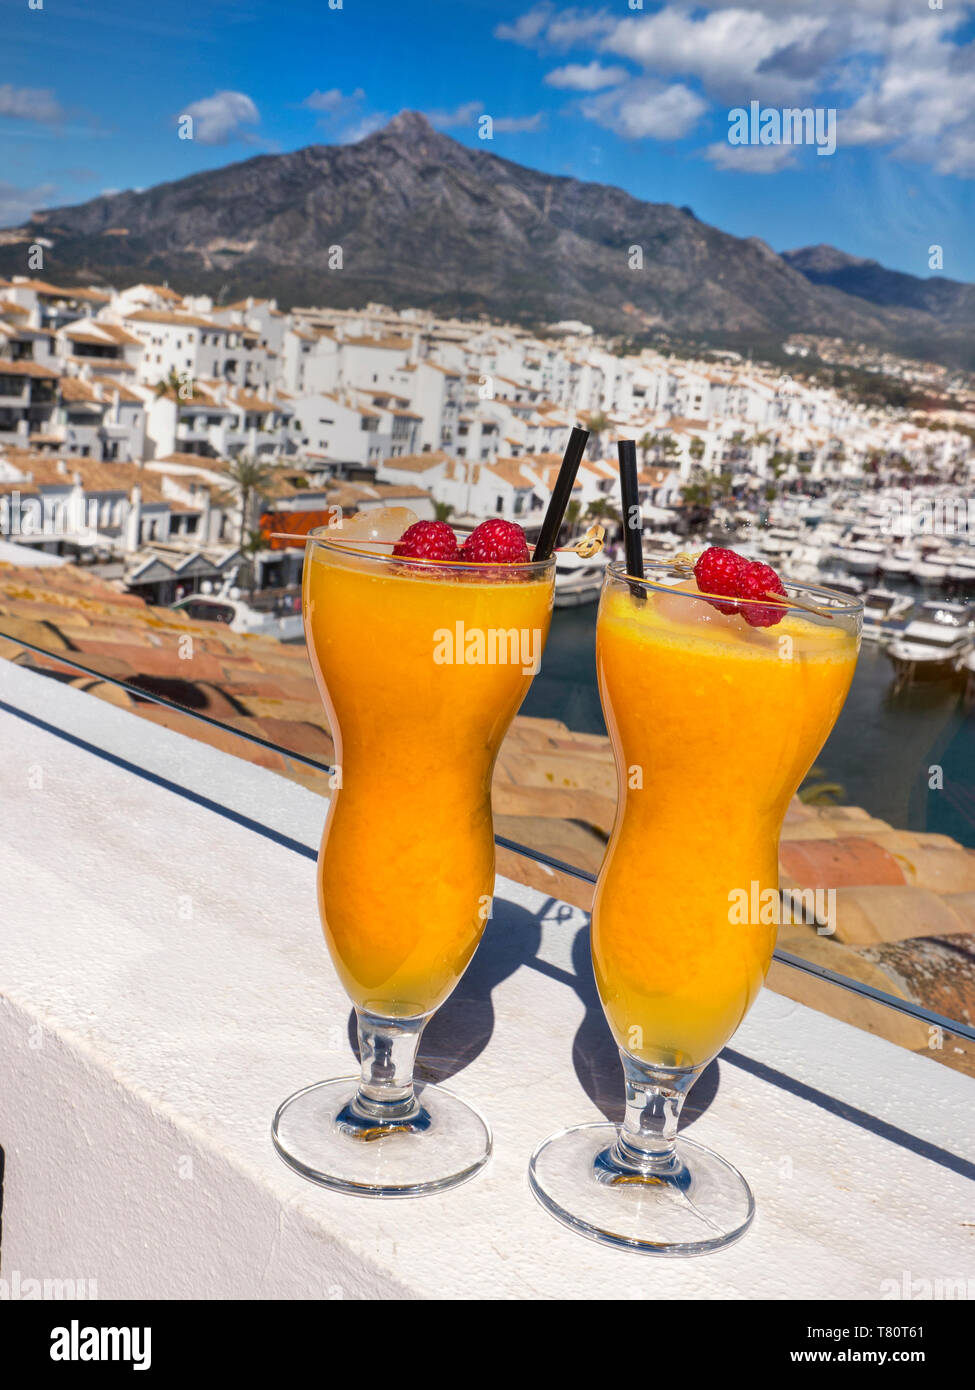 Puerto Banús Marbella espagnol frais jus d'orange naturel verres, sur le luxe en plein air bar terrasse de l'hôtel avec vue sur port de plaisance Puerto Banús Marbella espagne Banque D'Images